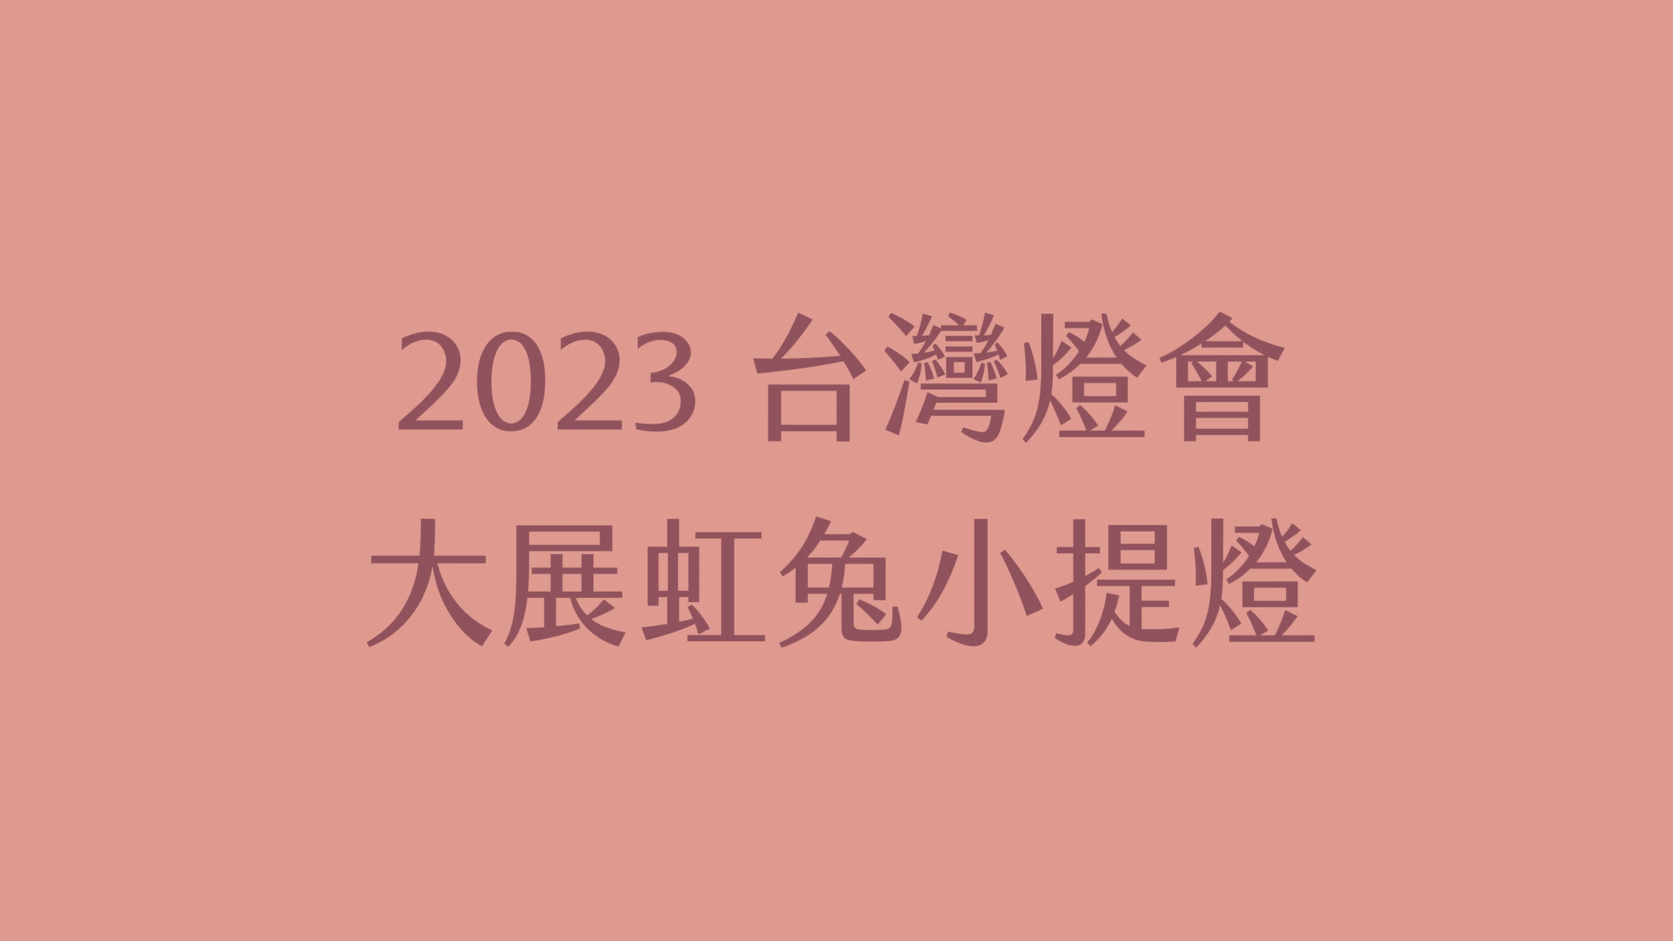  2023台灣燈會 大展虹兔小提燈組裝影片